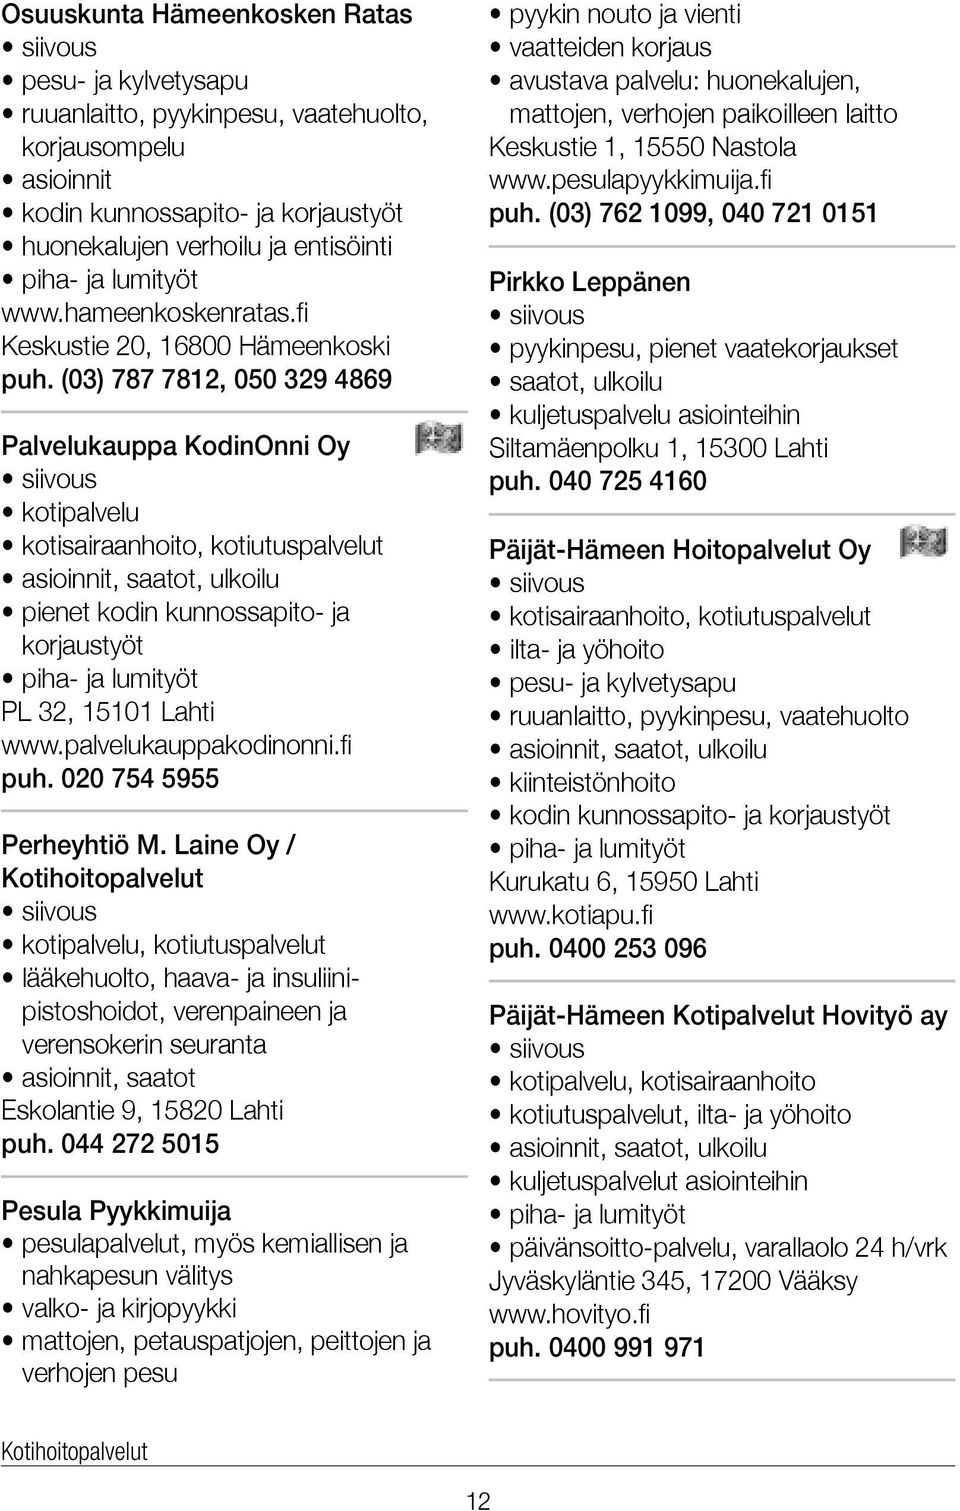 (03) 787 7812, 050 329 4869 Palvelukauppa KodinOnni Oy kotipalvelu kotisairaanhoito, kotiutuspalvelut pienet kodin kunnossapito- ja korjaustyöt piha- ja lumityöt PL 32, 15101 Lahti www.